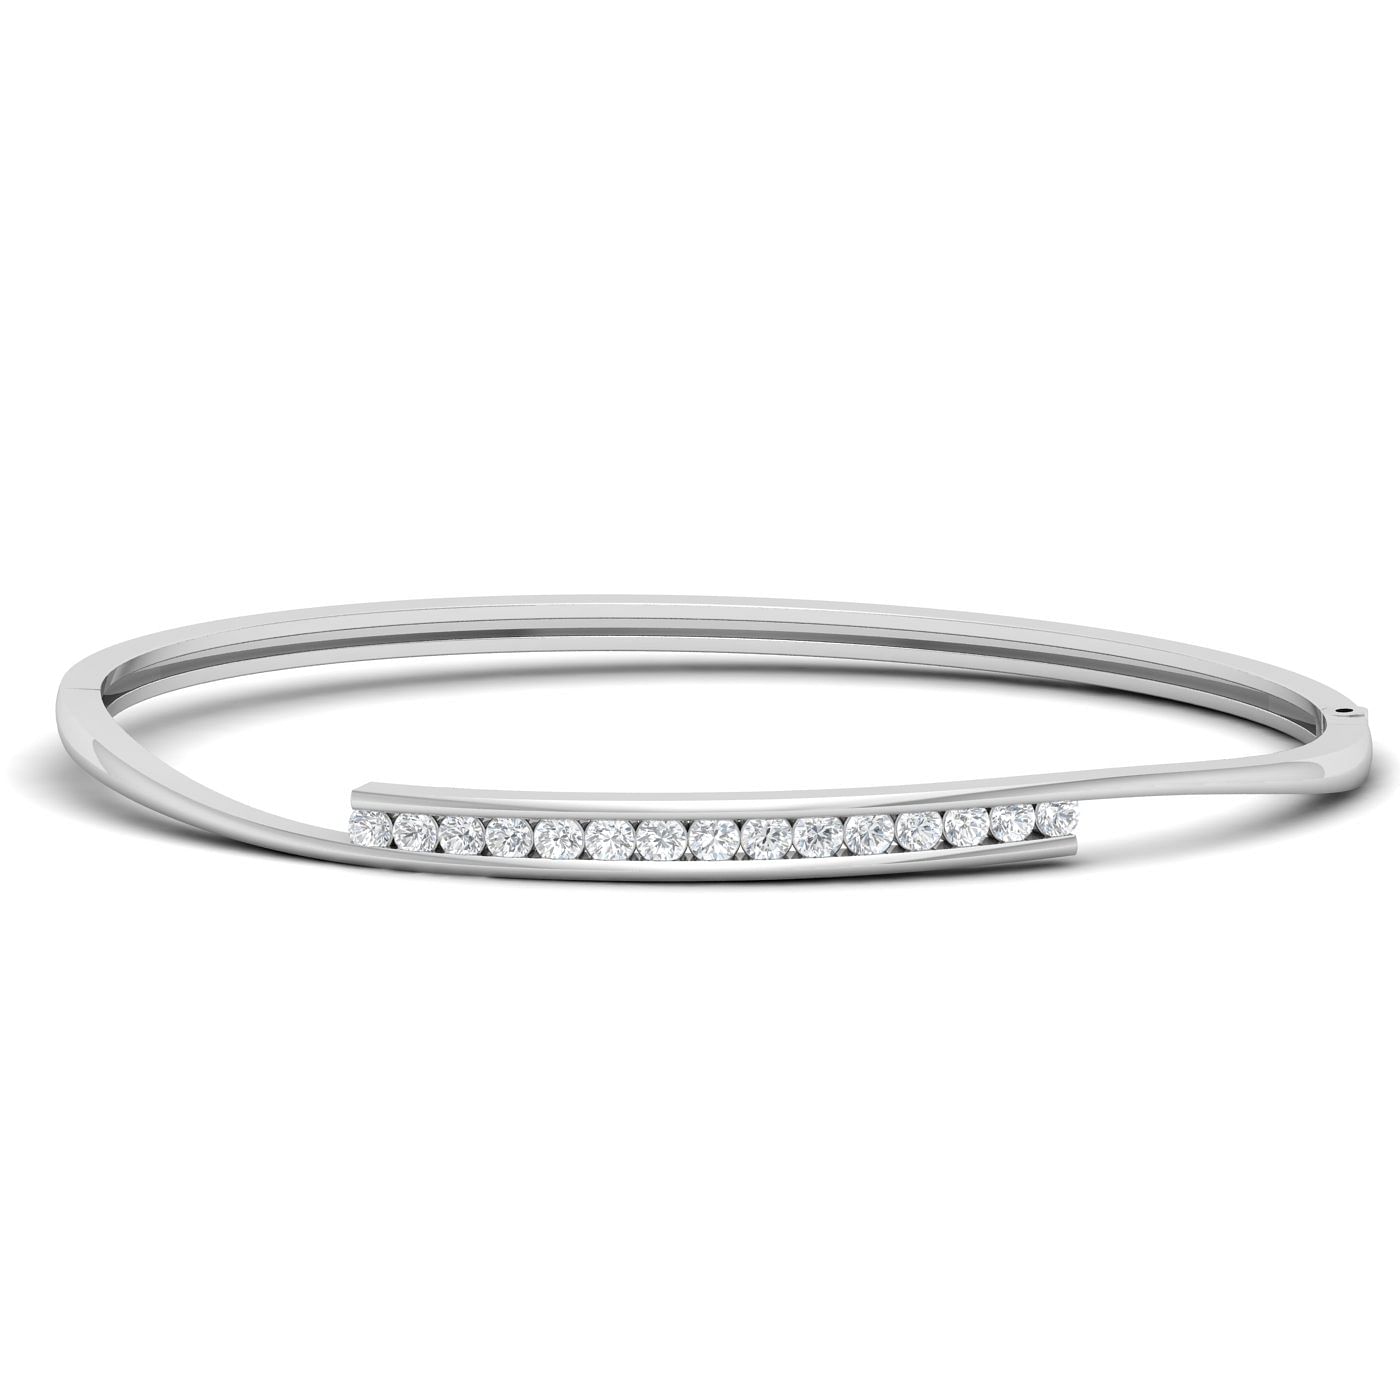 White gold wedding design Giselle Diamond Bracelet